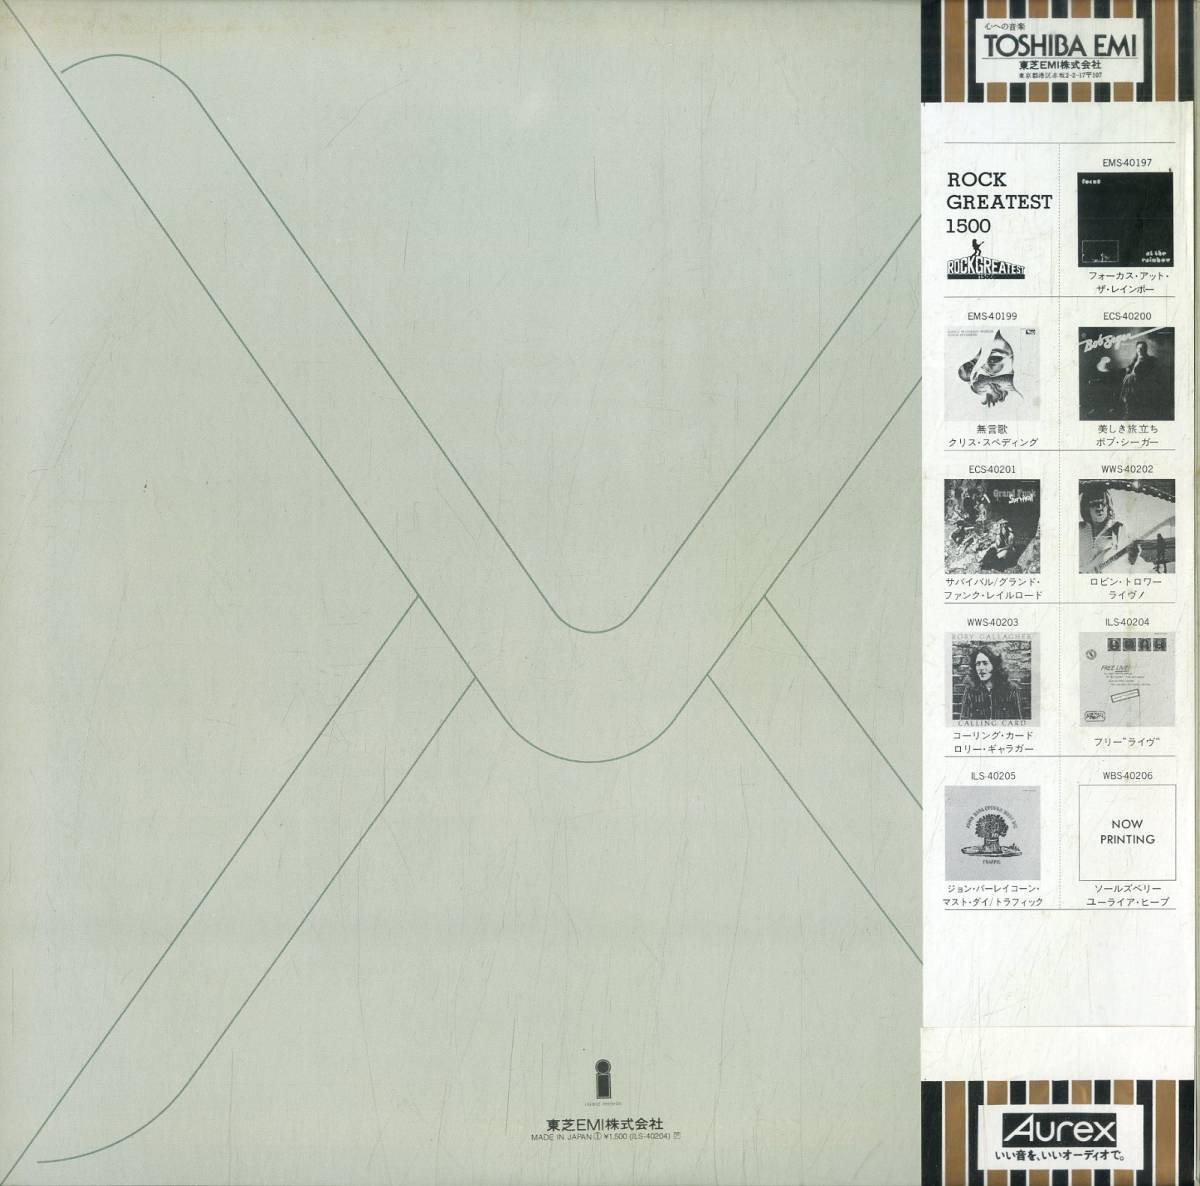 A00511939/LP/フリー(ポール・ロジャース)「フリー・ライブ / Free Live! (1978年・ILS-40204)」_画像2